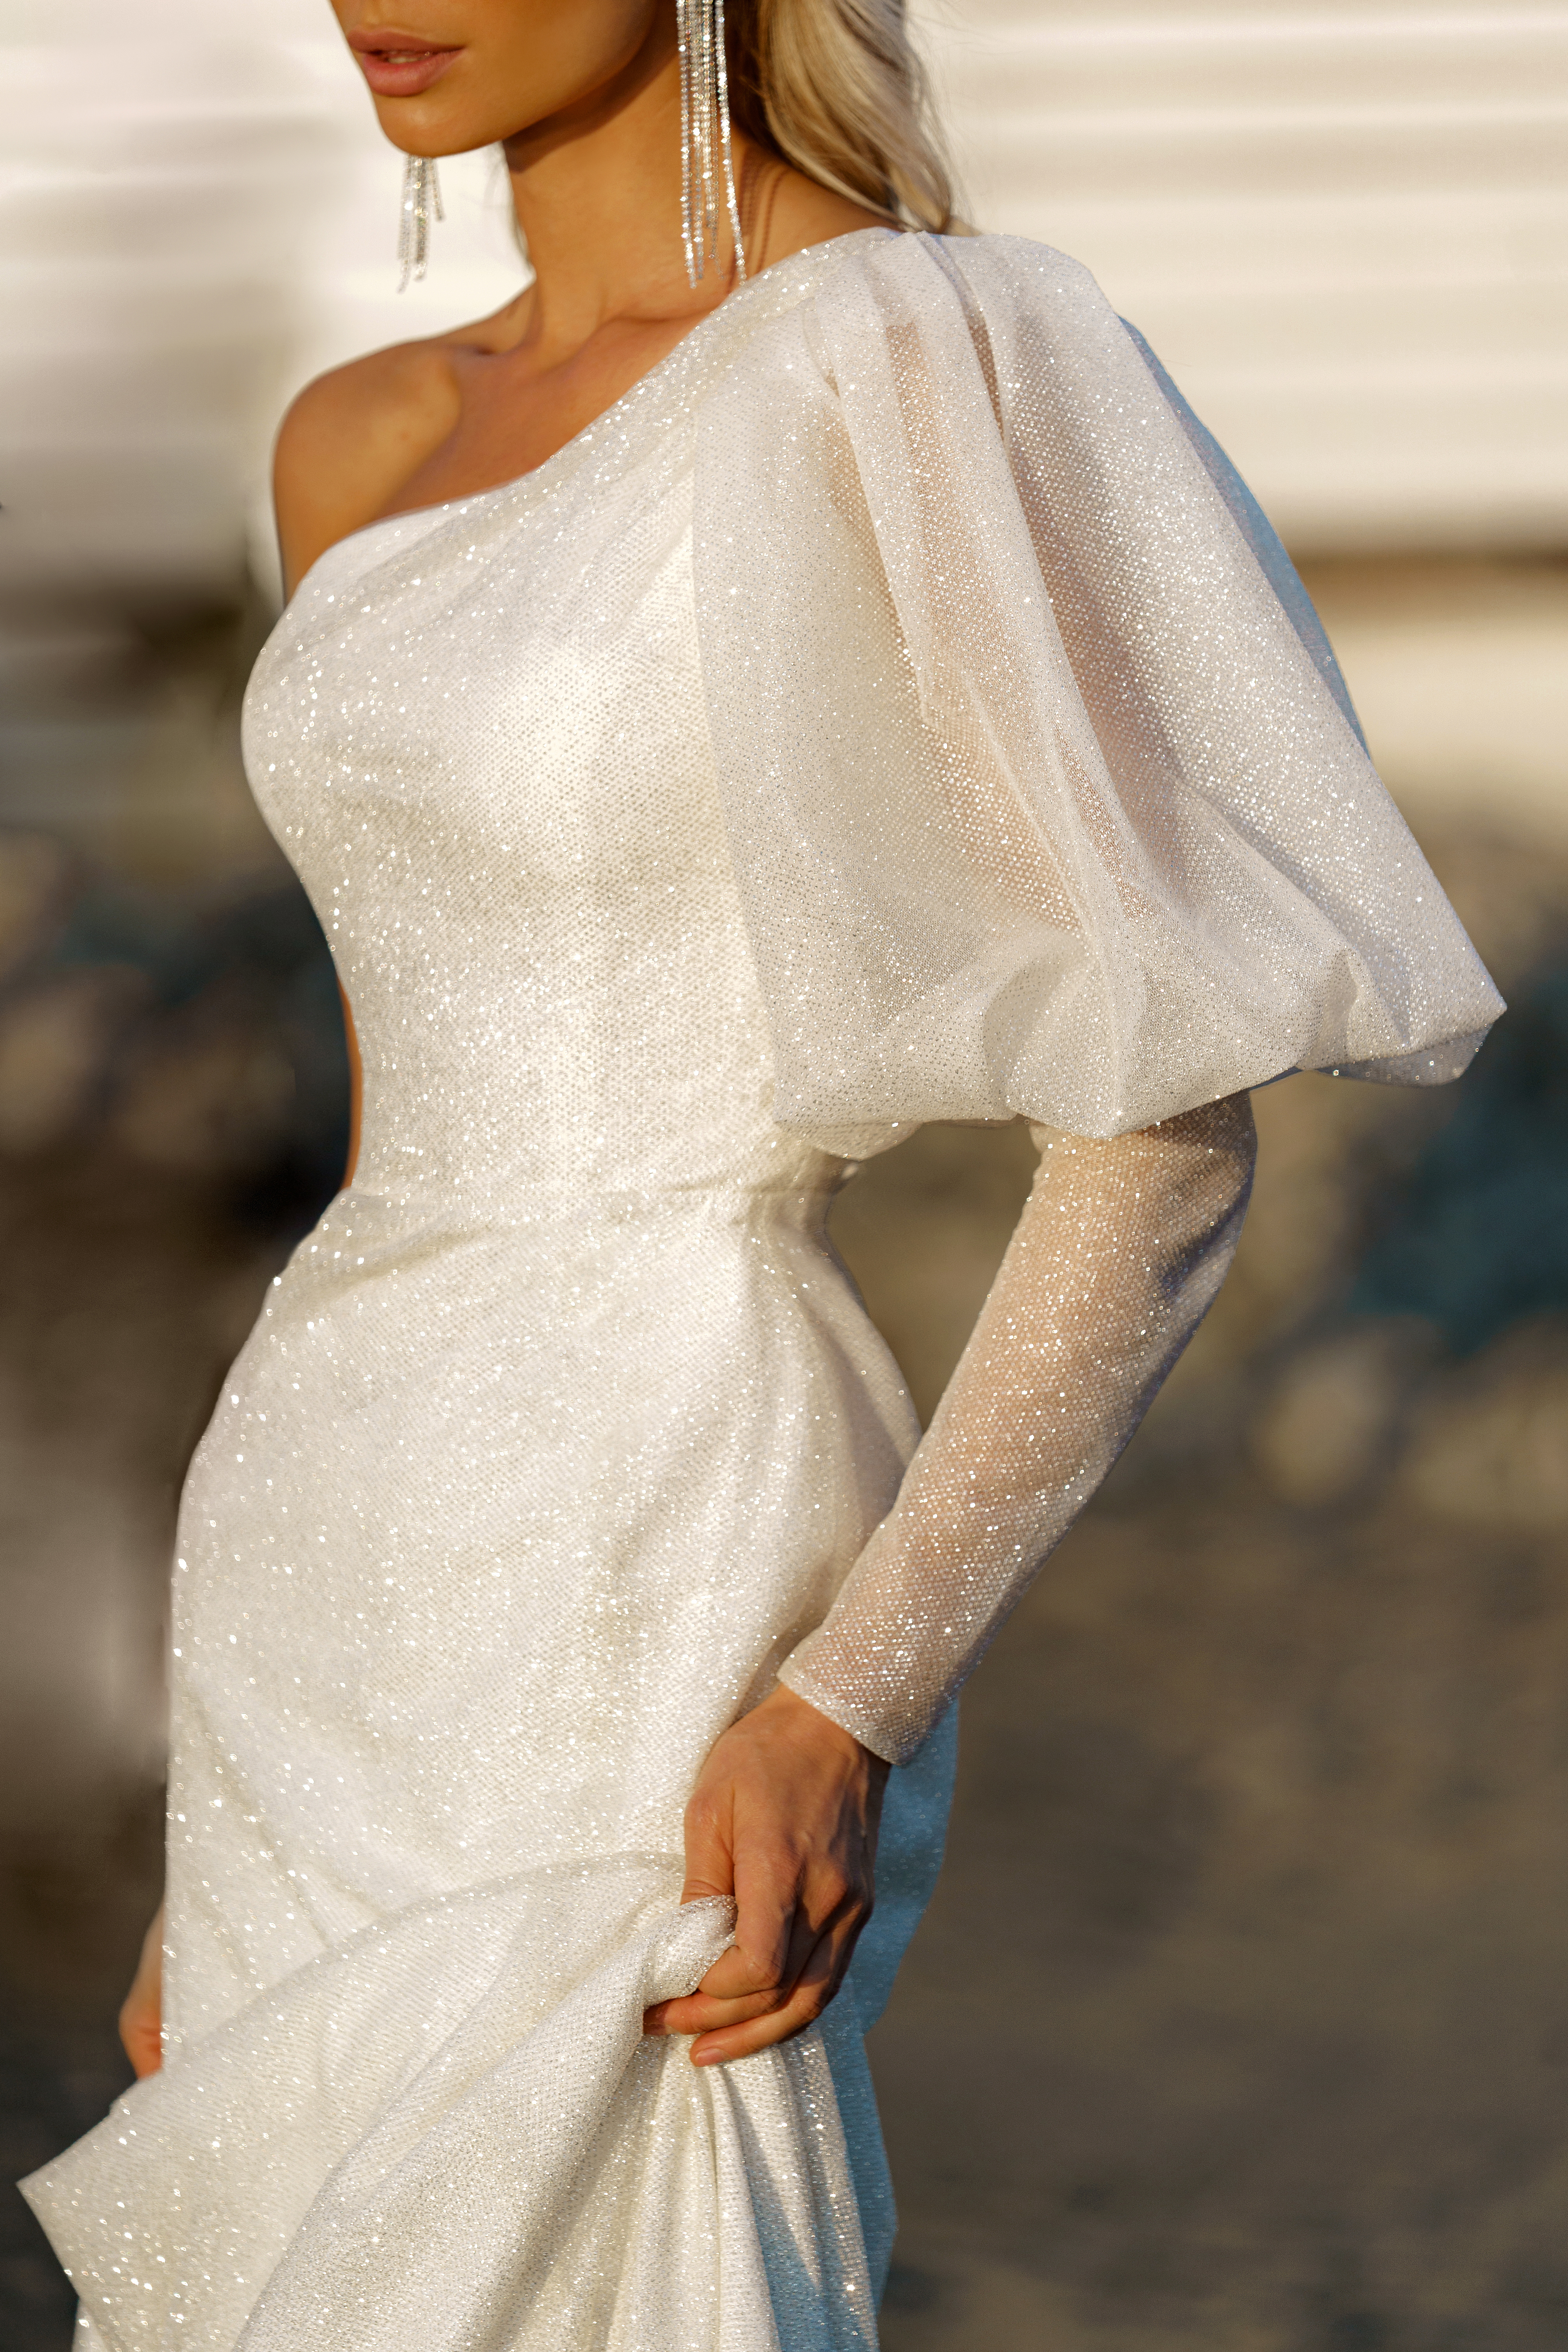 Купить свадебное платье «Амбре» Сонеста из коллекции 2022 года в салоне «Мэри Трюфель»